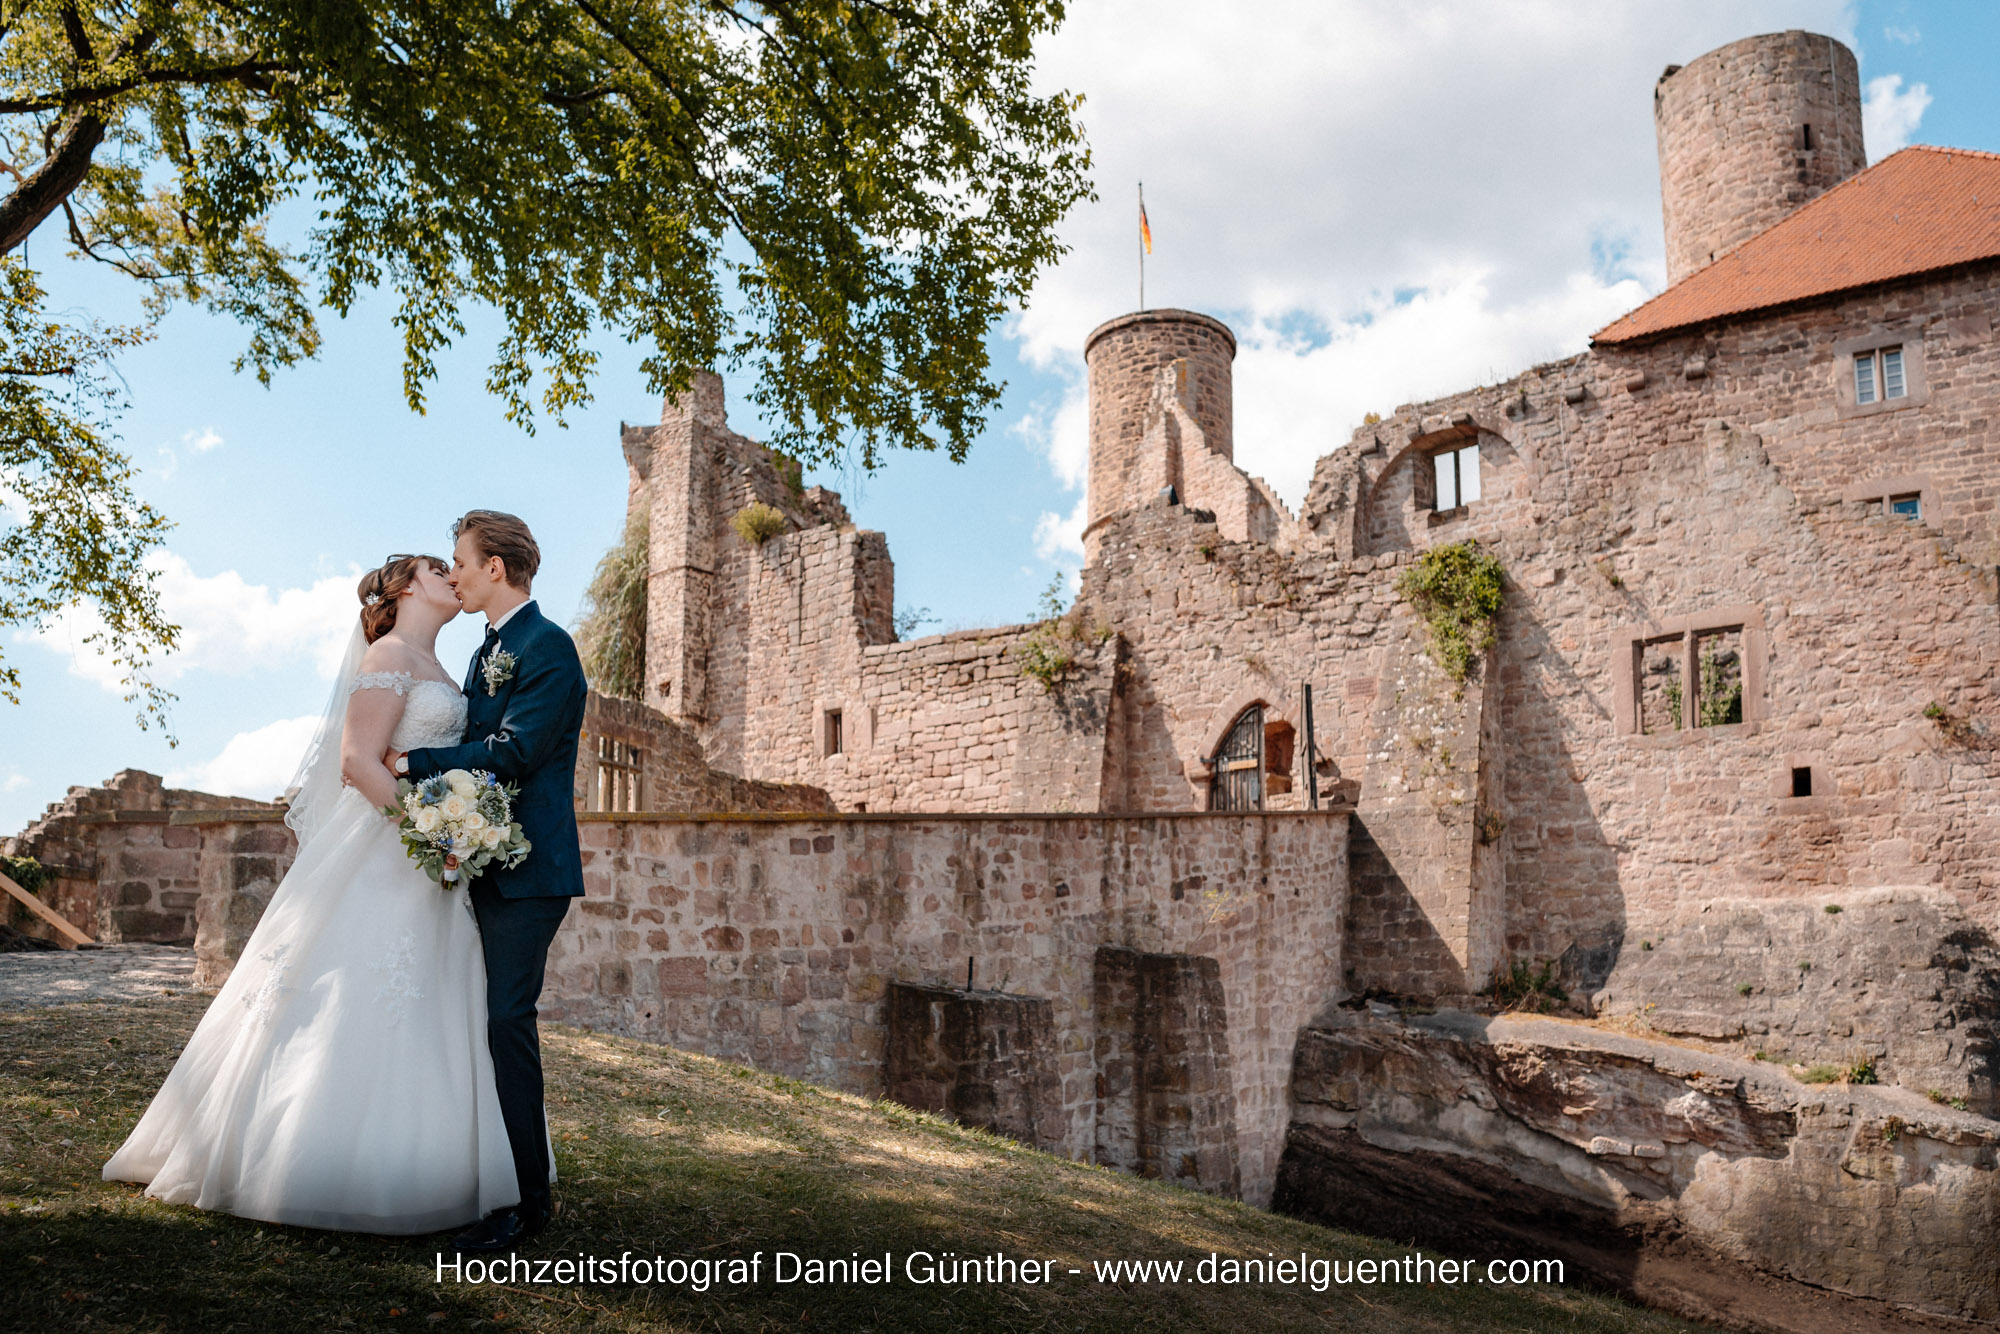 Standesamt Burg Hanstein Bornhagen Eichsfeld Hochzeitsfeier Trauung Fotograf